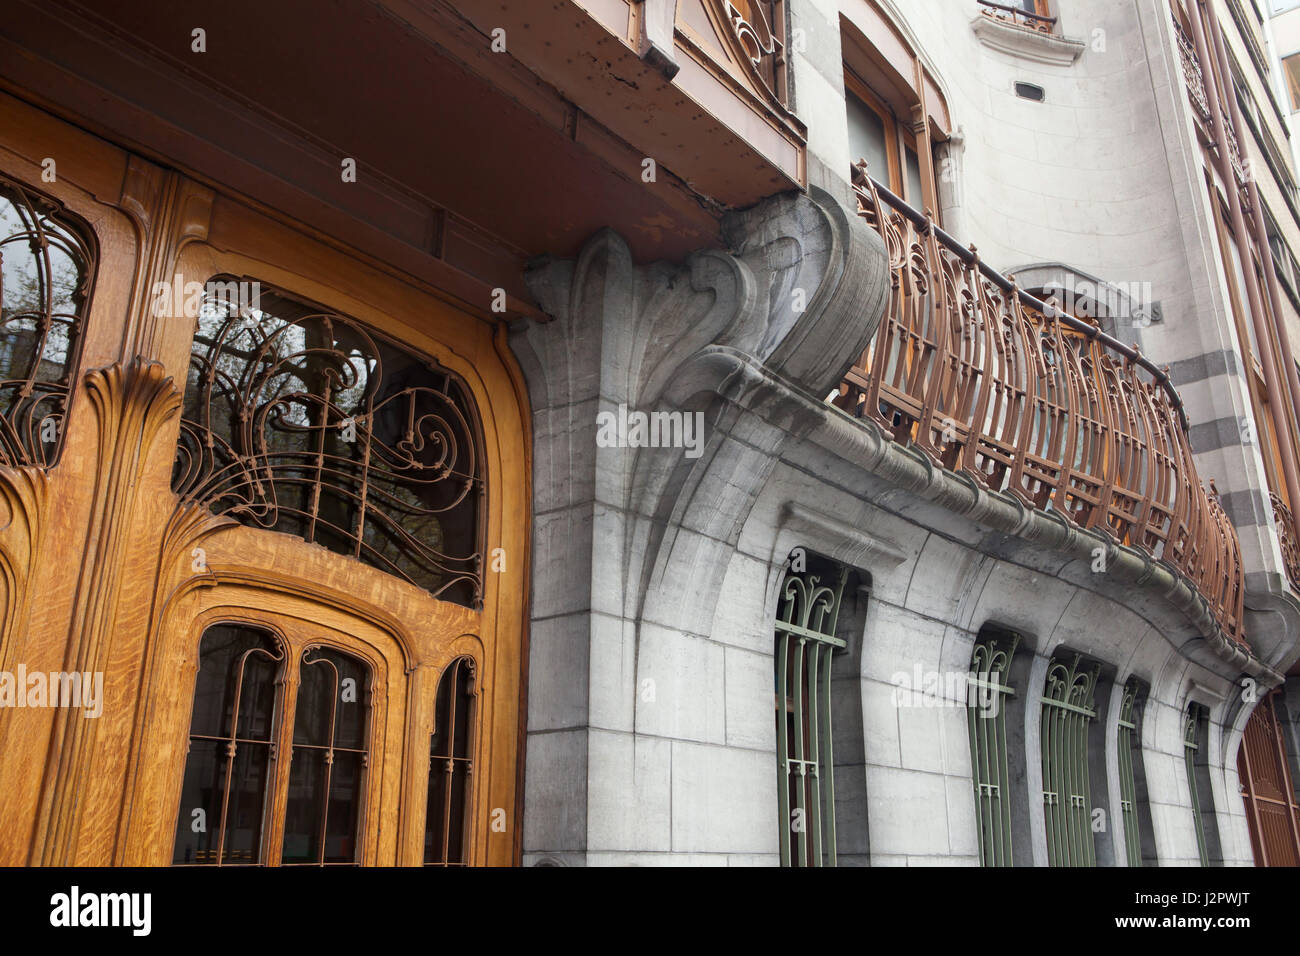 Hotel Solvay a Bruxelles, Belgio. Il Townhouse progettata dal belga architetto liberty Victor Horta per il ricco industriale Armand Solvay è stata costruita nel 1894-1903. La costruzione è stata iscritta nella Lista del Patrimonio Mondiale dell'UNESCO tra gli altri quattro edifici Art Nouveau a Bruxelles. Foto Stock